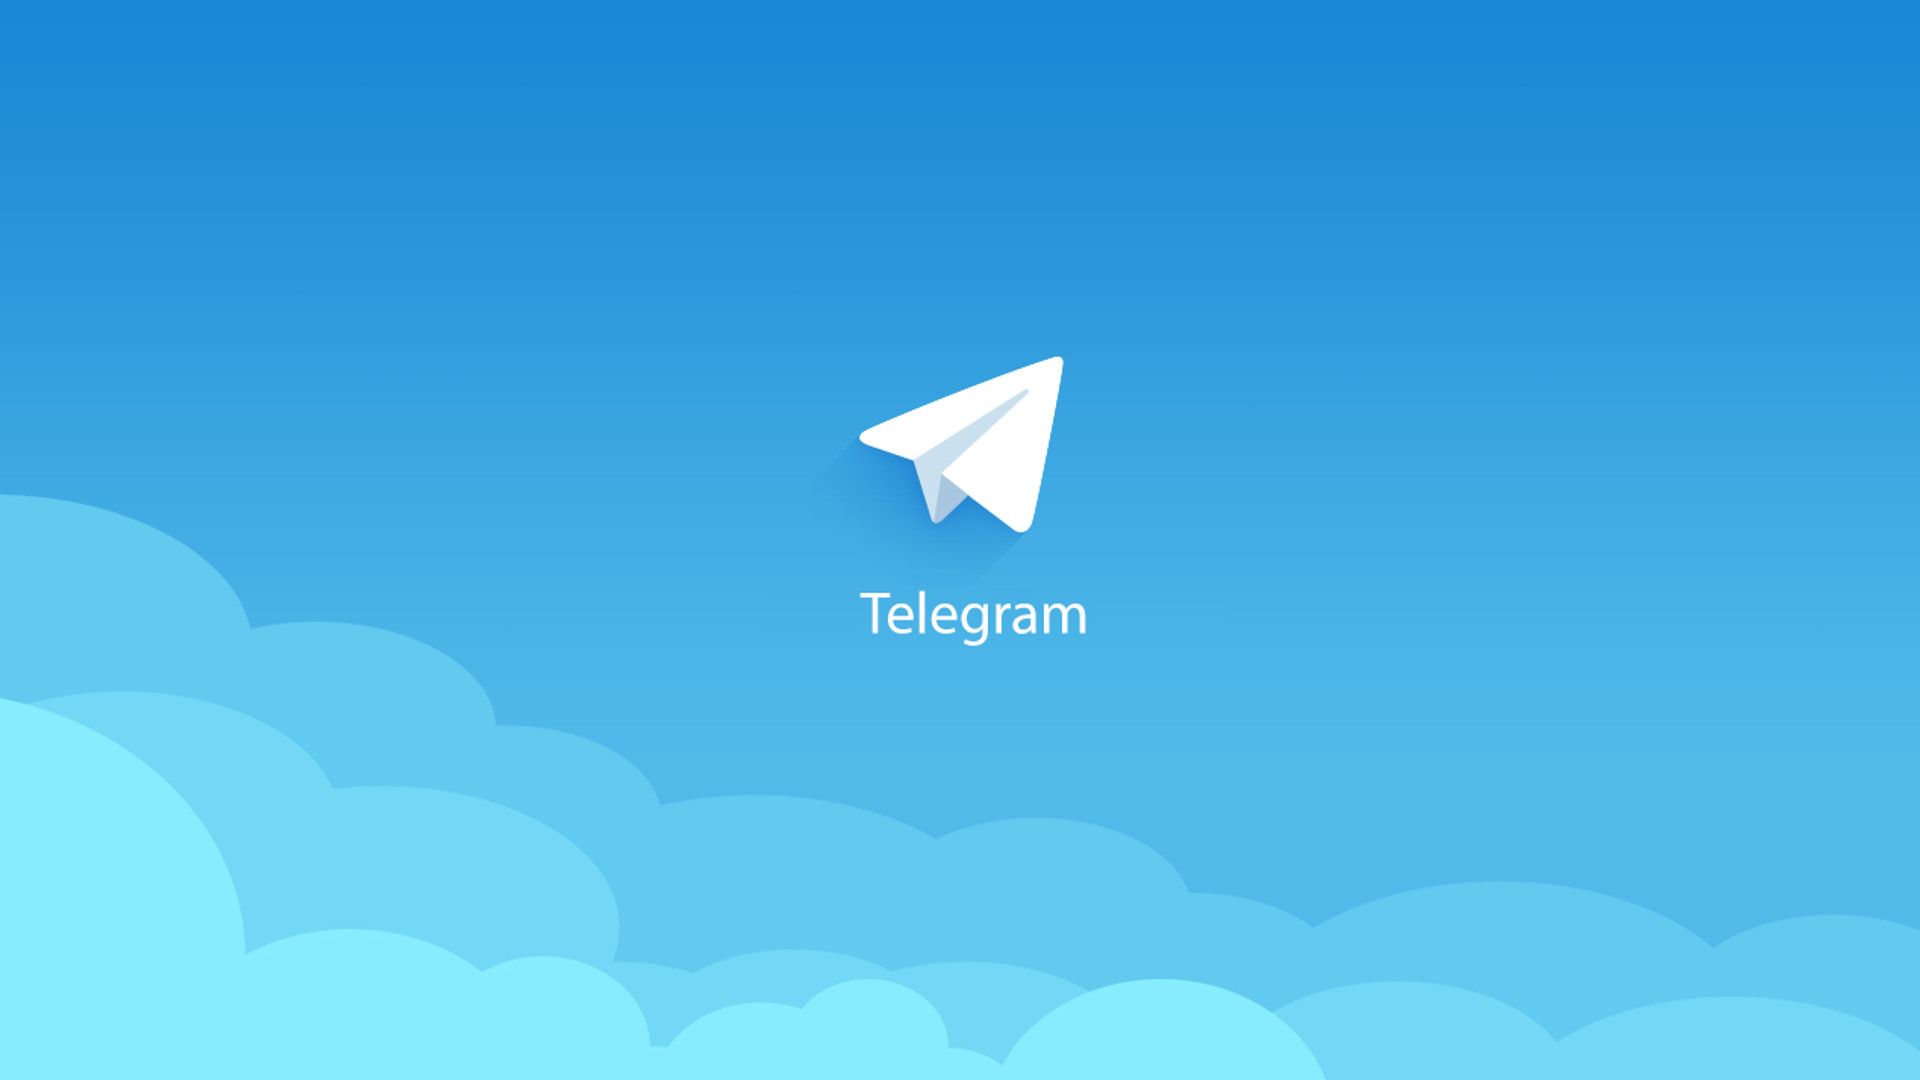 Telegram Logo Wallpapers  Wallpaper Cave